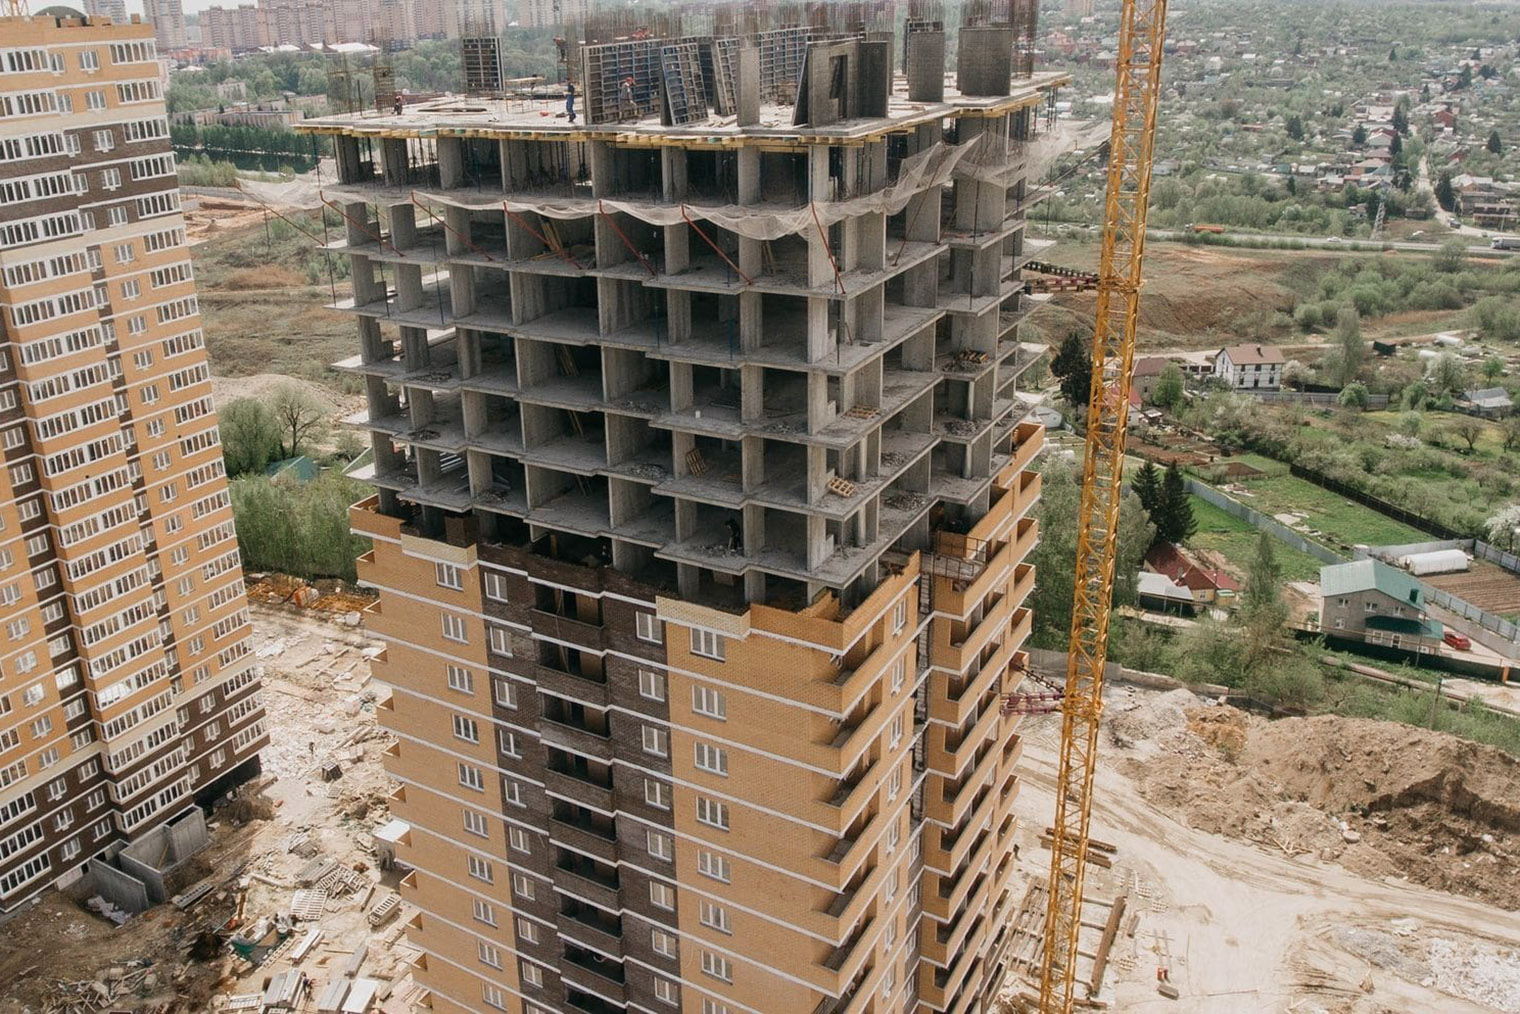 Здесь видна последовательность строительства монолитного дома: на нижних этажах каменщики уже возводят наружные стены, а опалубки со стен средних этажей сняты и перенесены на верхний. monolit-surgut.ru